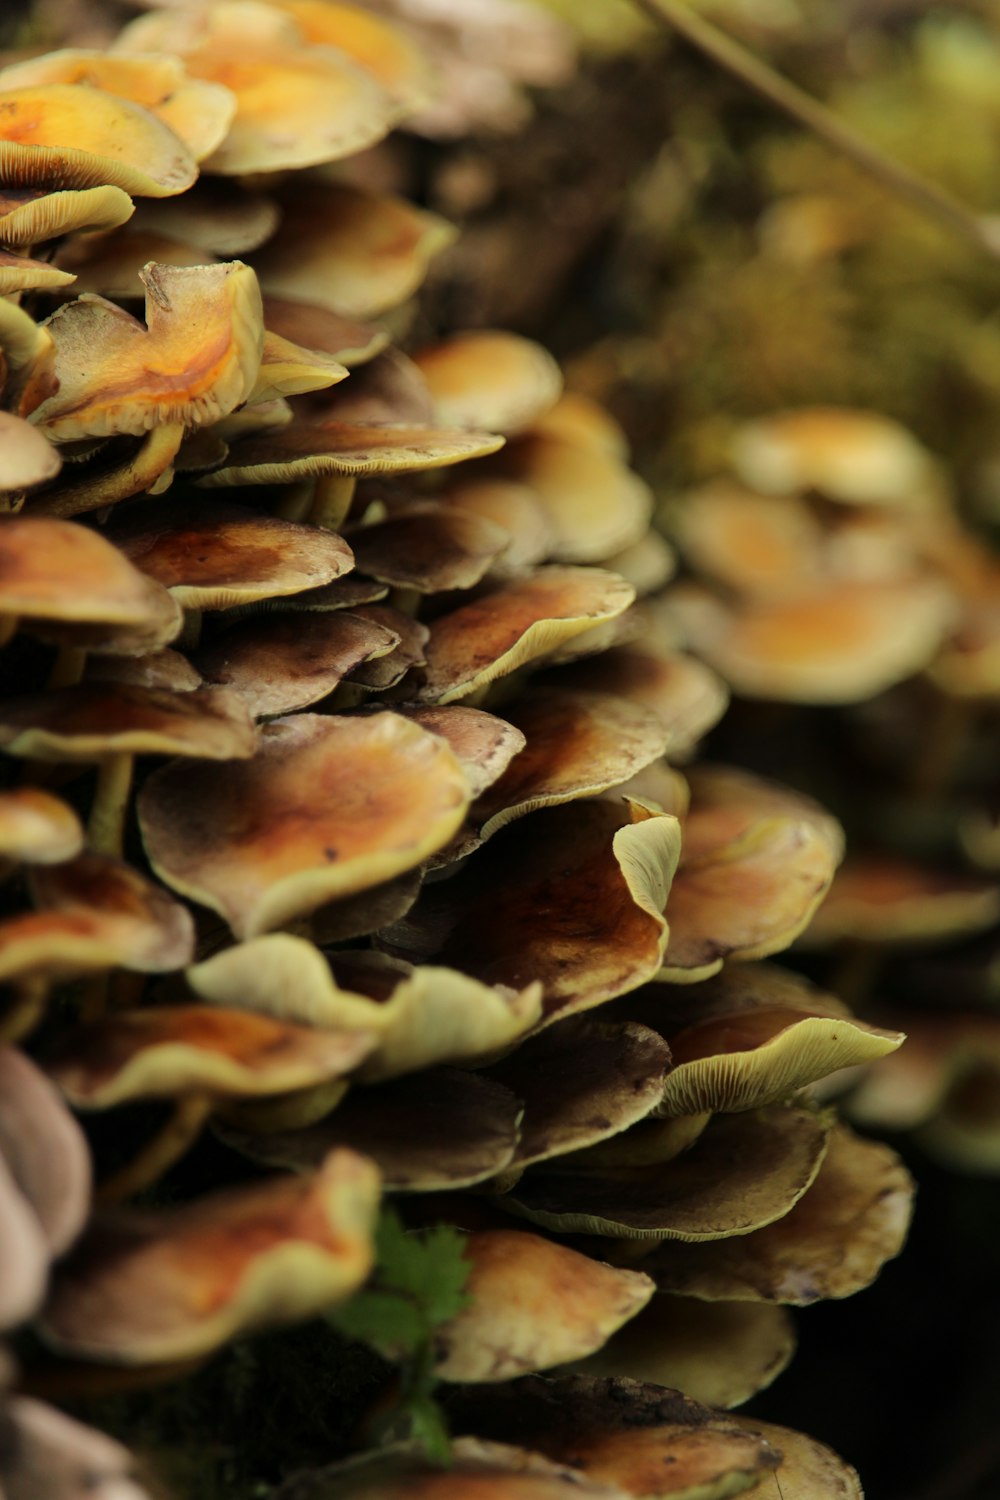 brown and white mushrooms in tilt shift lens